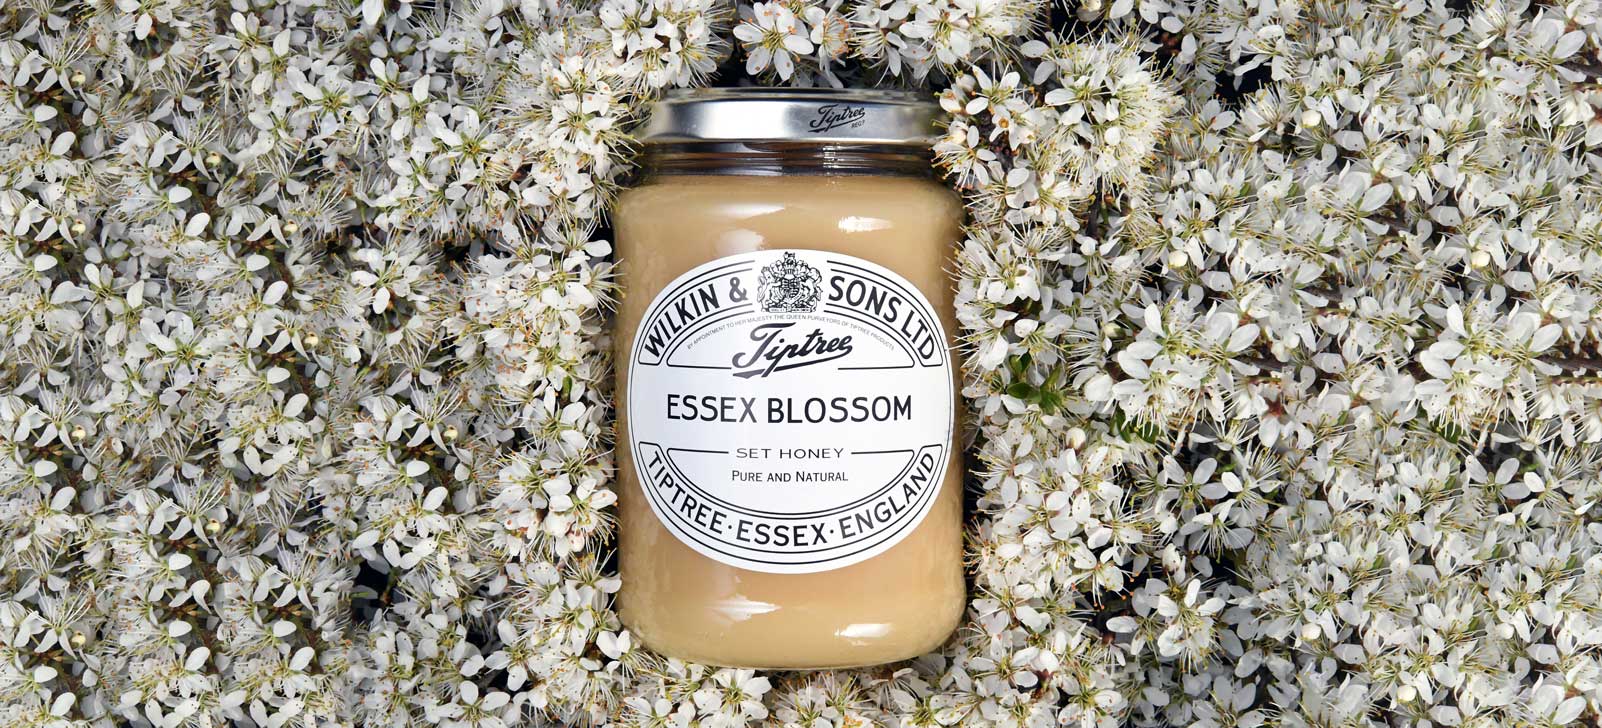 Essex-Blossom-Honey-with-Blossom-Flowers-wider